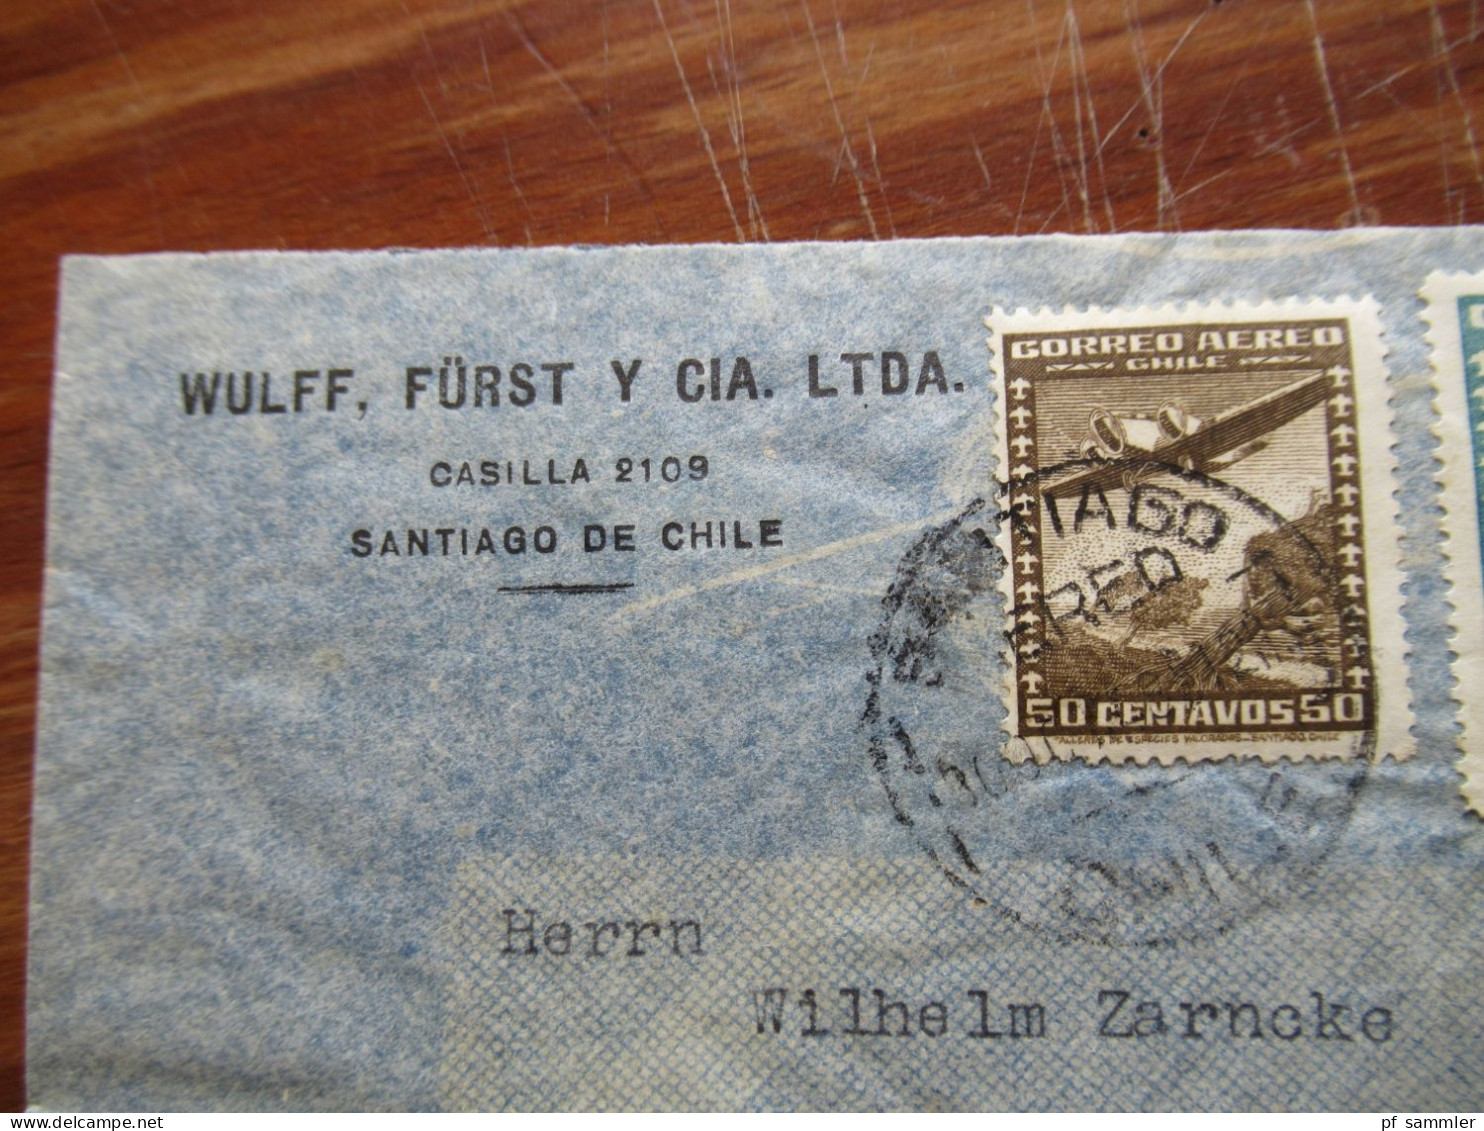 Chile 1937 Luftpost / Air Mail / Condor 7 Belege nach Hamburg gesendet! Schöne und interessante Frankaturen!